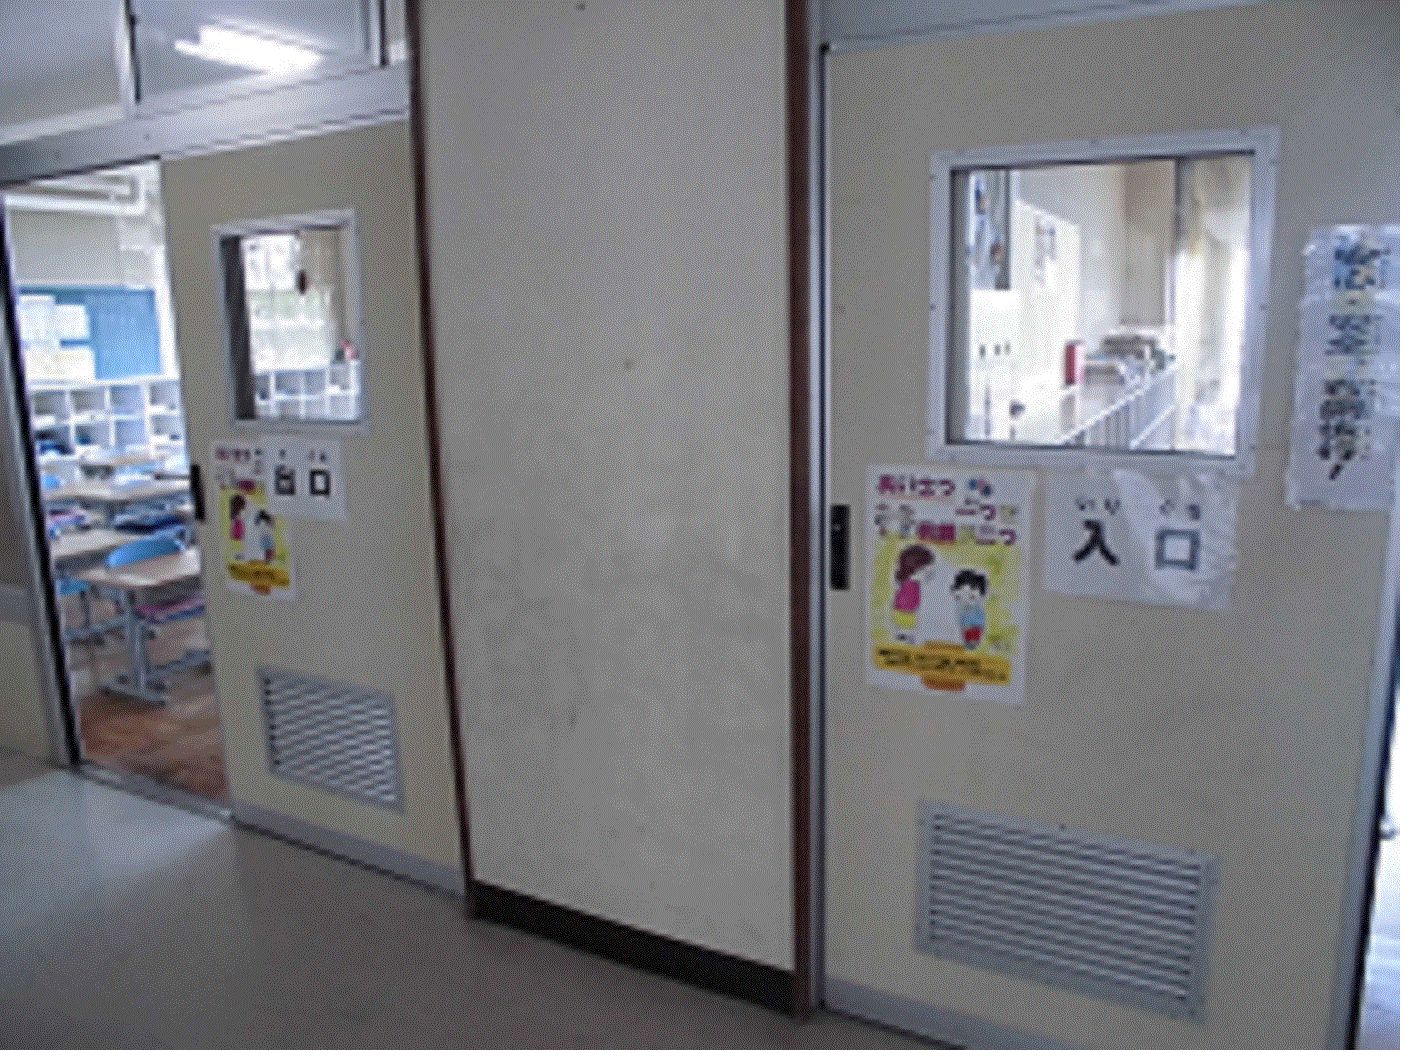 それぞれ「入り口」「出口」と書かれた掲示物が貼られている教室の扉の写真